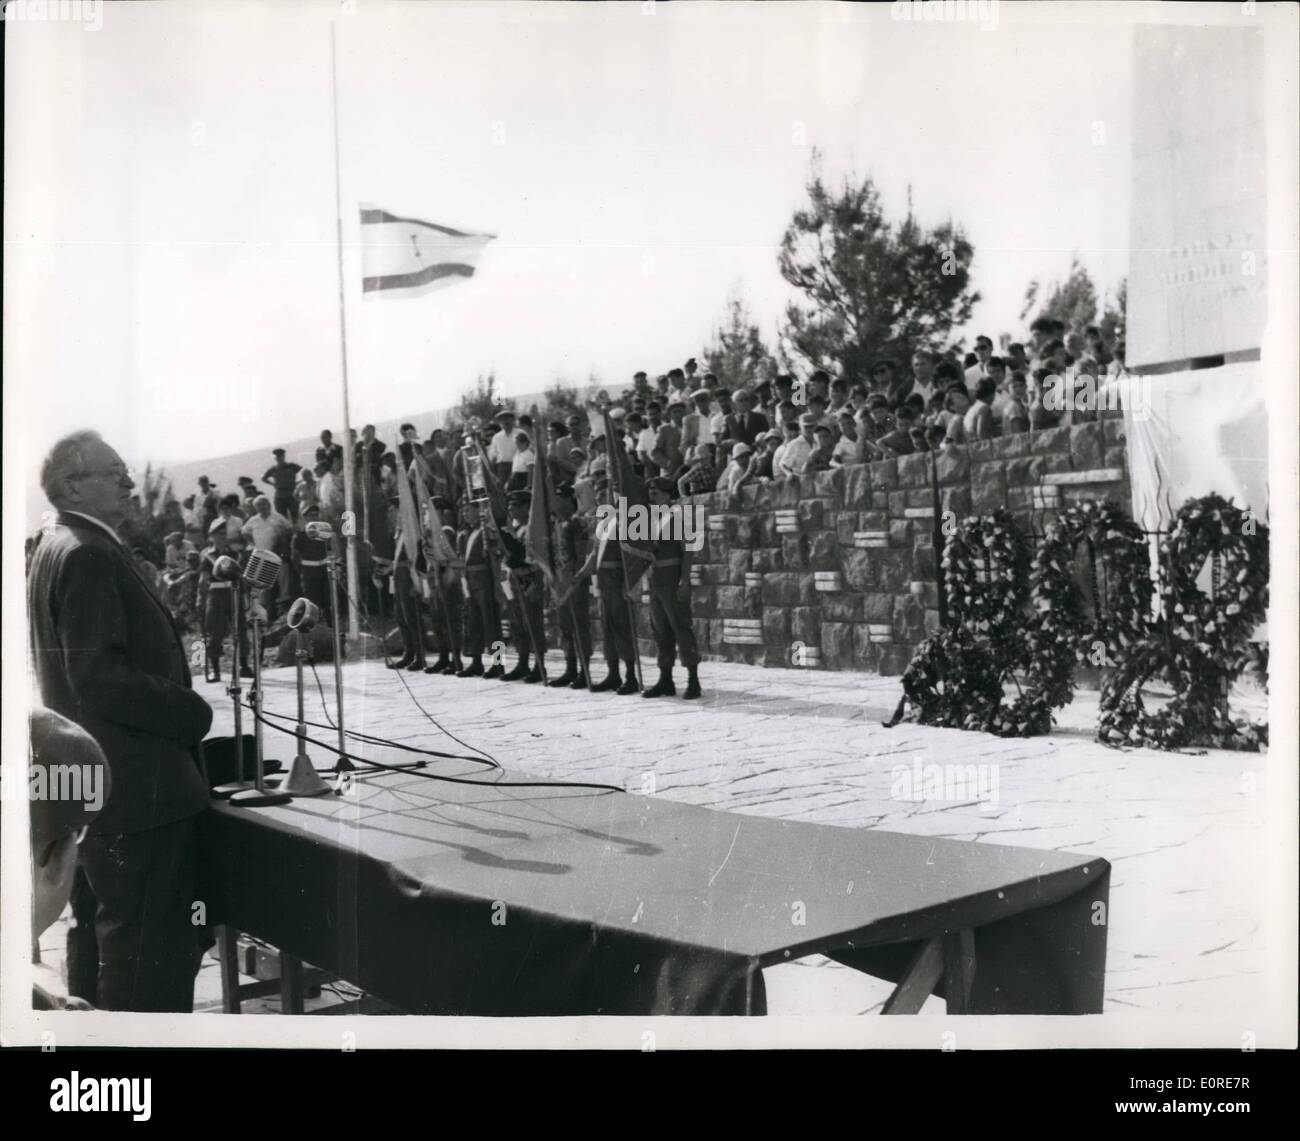 Avril 04, 1959 - Monument dévoilé en mémoire de la ''libérateurs'' de Galilée : en présence du I.Ben Zvi le président d'Israël un monument a été dévoilé dans les collines de la basse Galilée, dans la mémoire de l'armée qui a combattu Israël Hagana les batailles décisives pour libérer la Galilée dans ''Arba invasion syrienne armée'' dans Kaudji qui a envahi le pays, en 1948. La photo montre le président Ben Zvi inaugurant le monument en basse Galilée. Banque D'Images